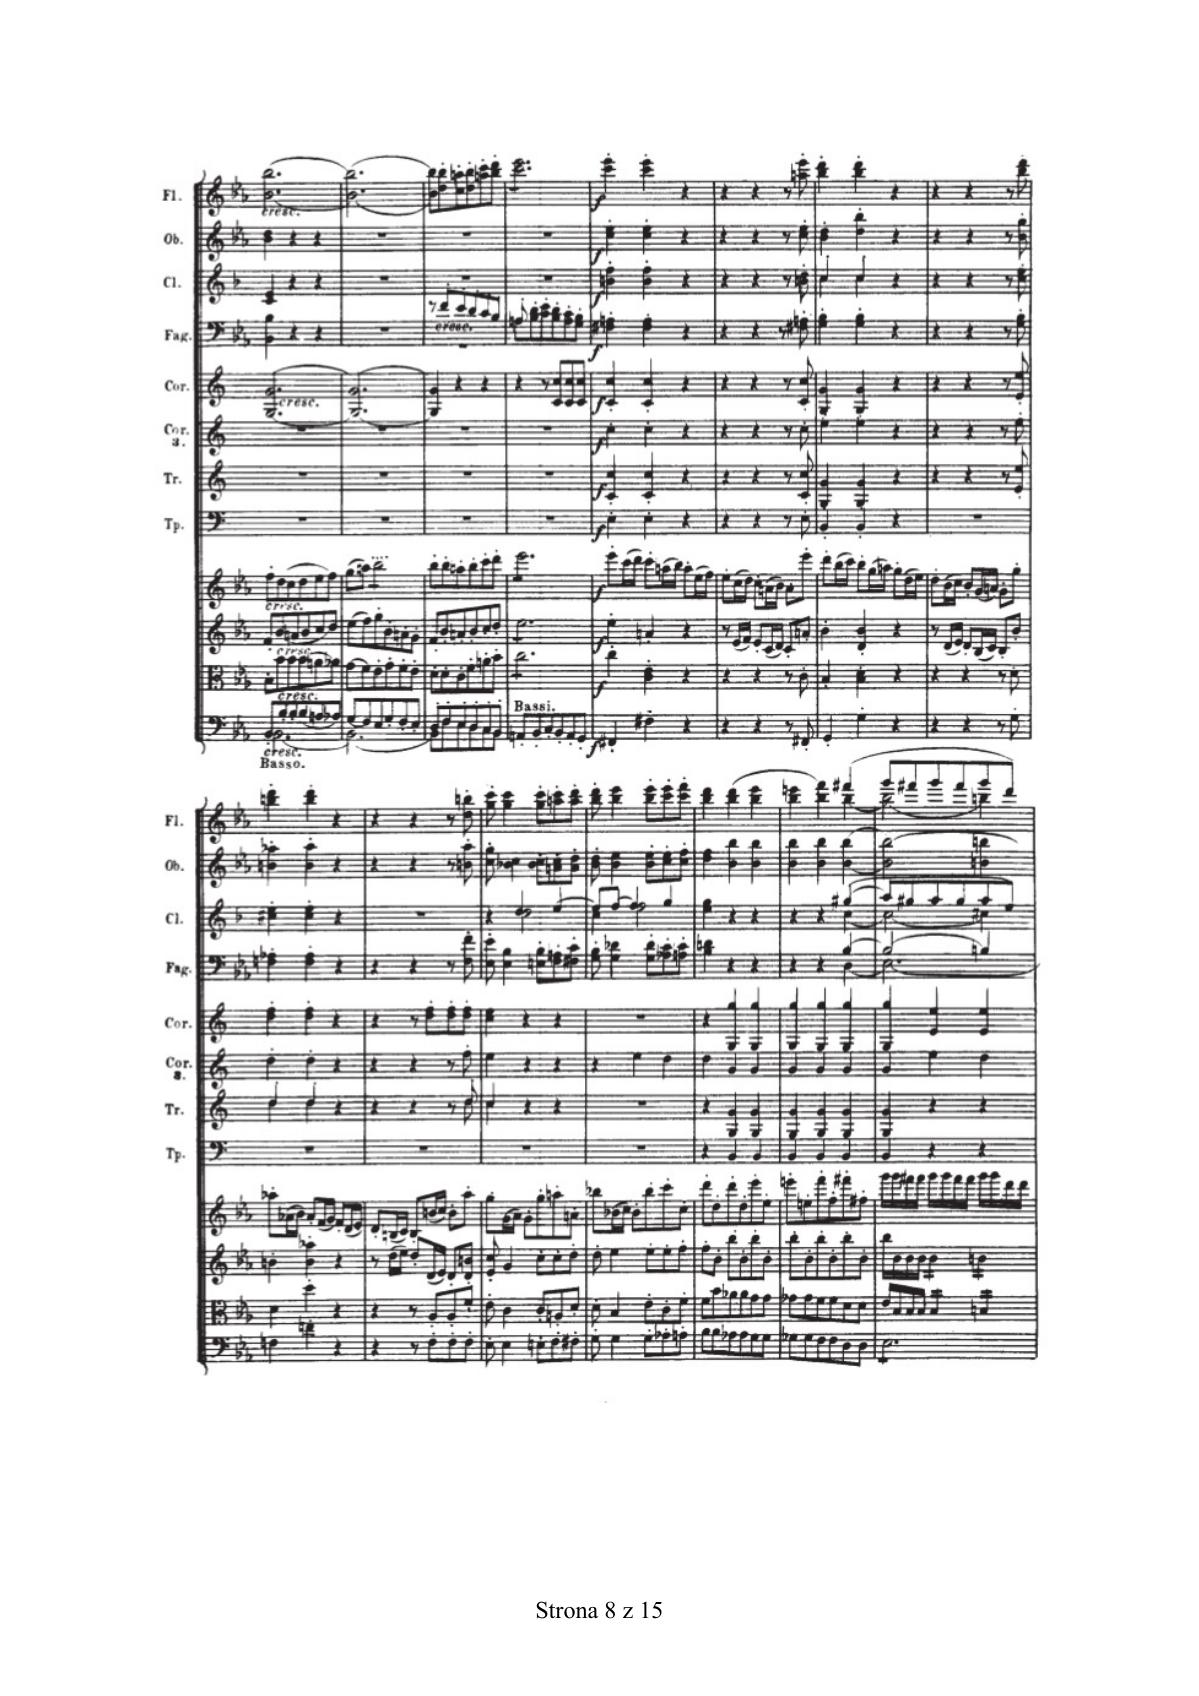 zadanie 17 - Ludwig van Beethoven, III Symfonia Es-dur op. 55, cz. I - fragment-4